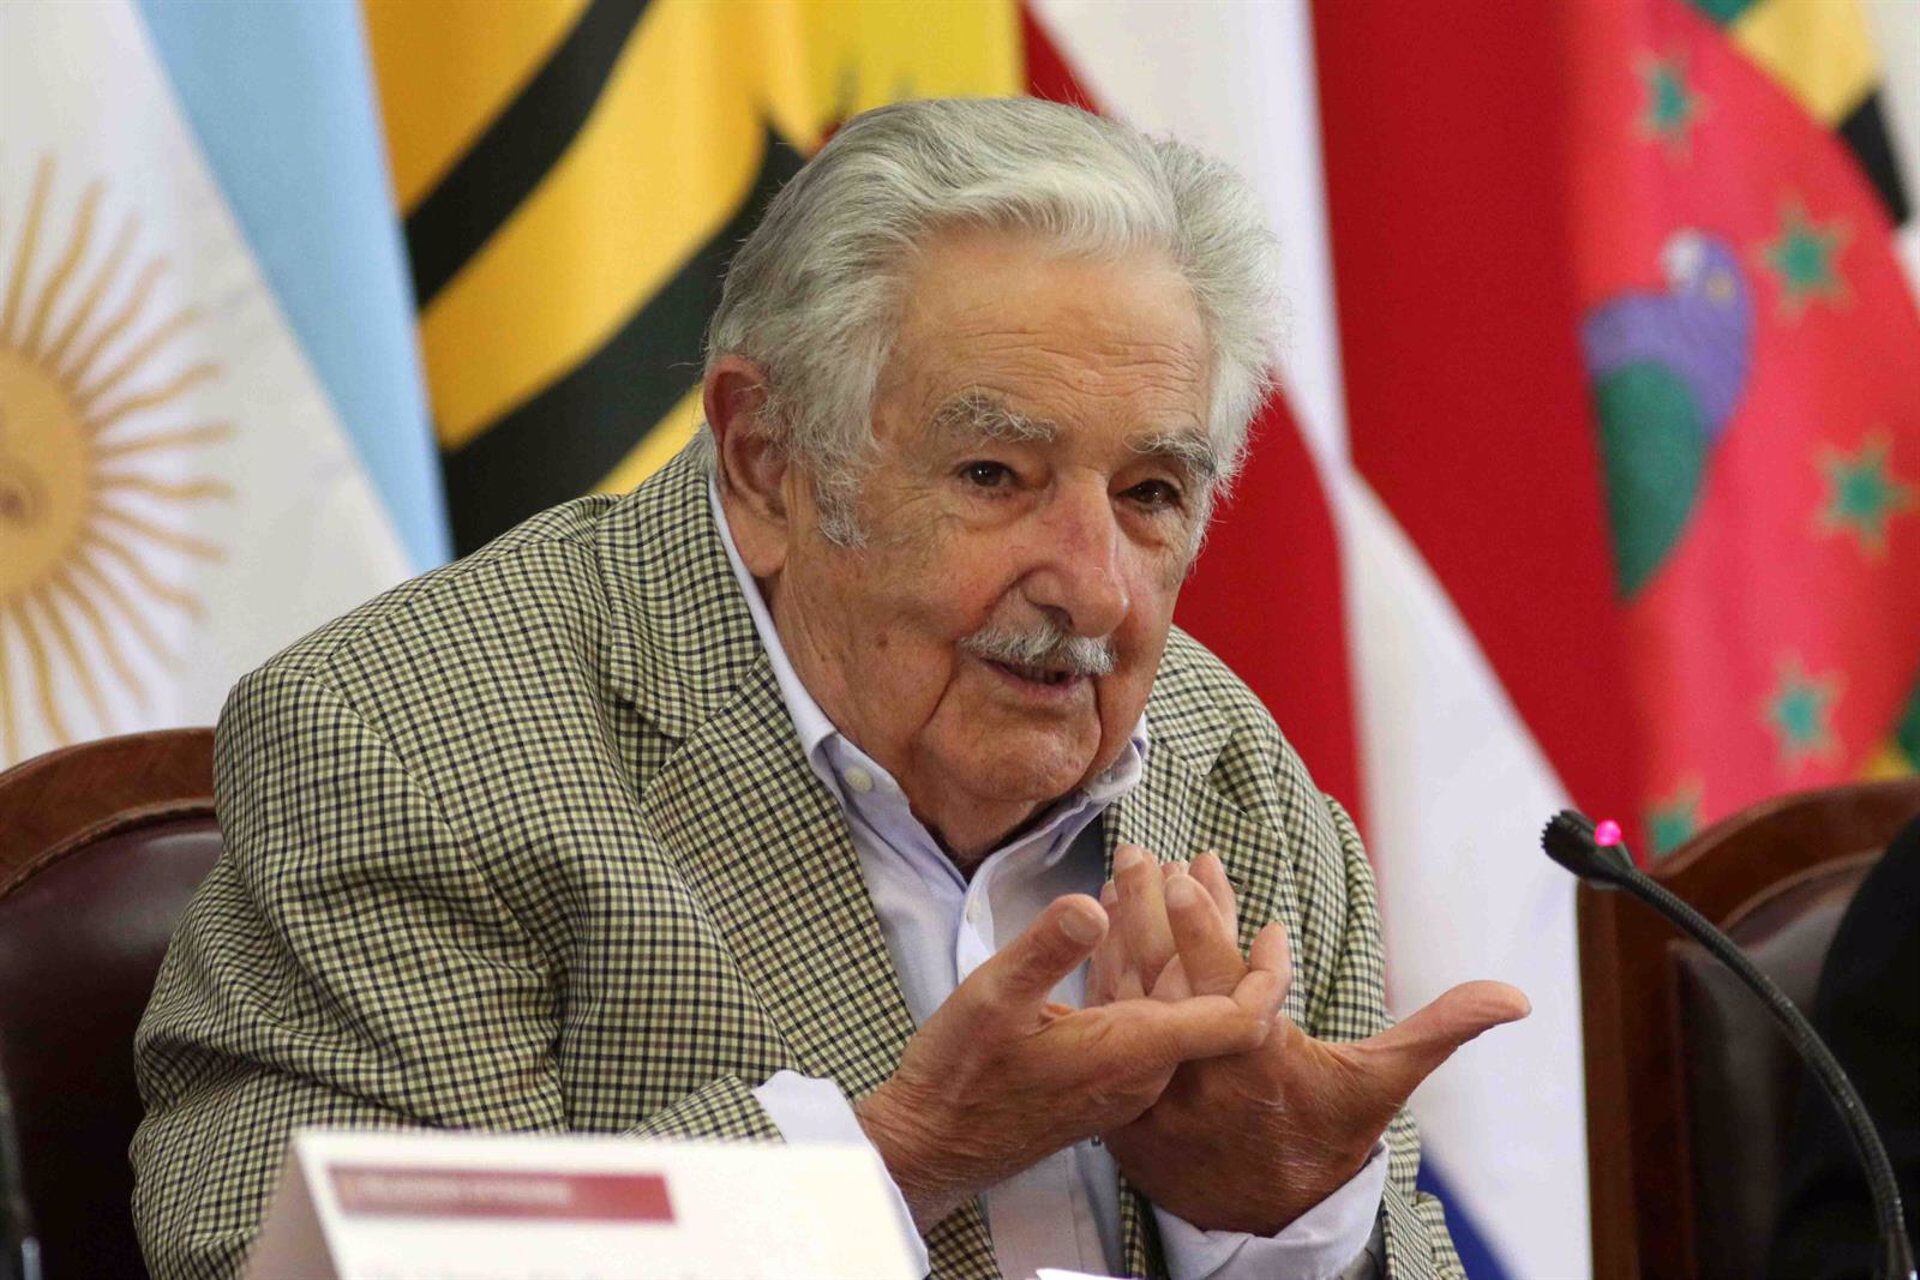 20/10/2020 El expresidente de Uruguay José Mujica POLITICA SUDAMÉRICA URUGUAY INTERNACIONAL EL UNIVERSAL / ZUMA PRESS / CONTACTOPHOTO 